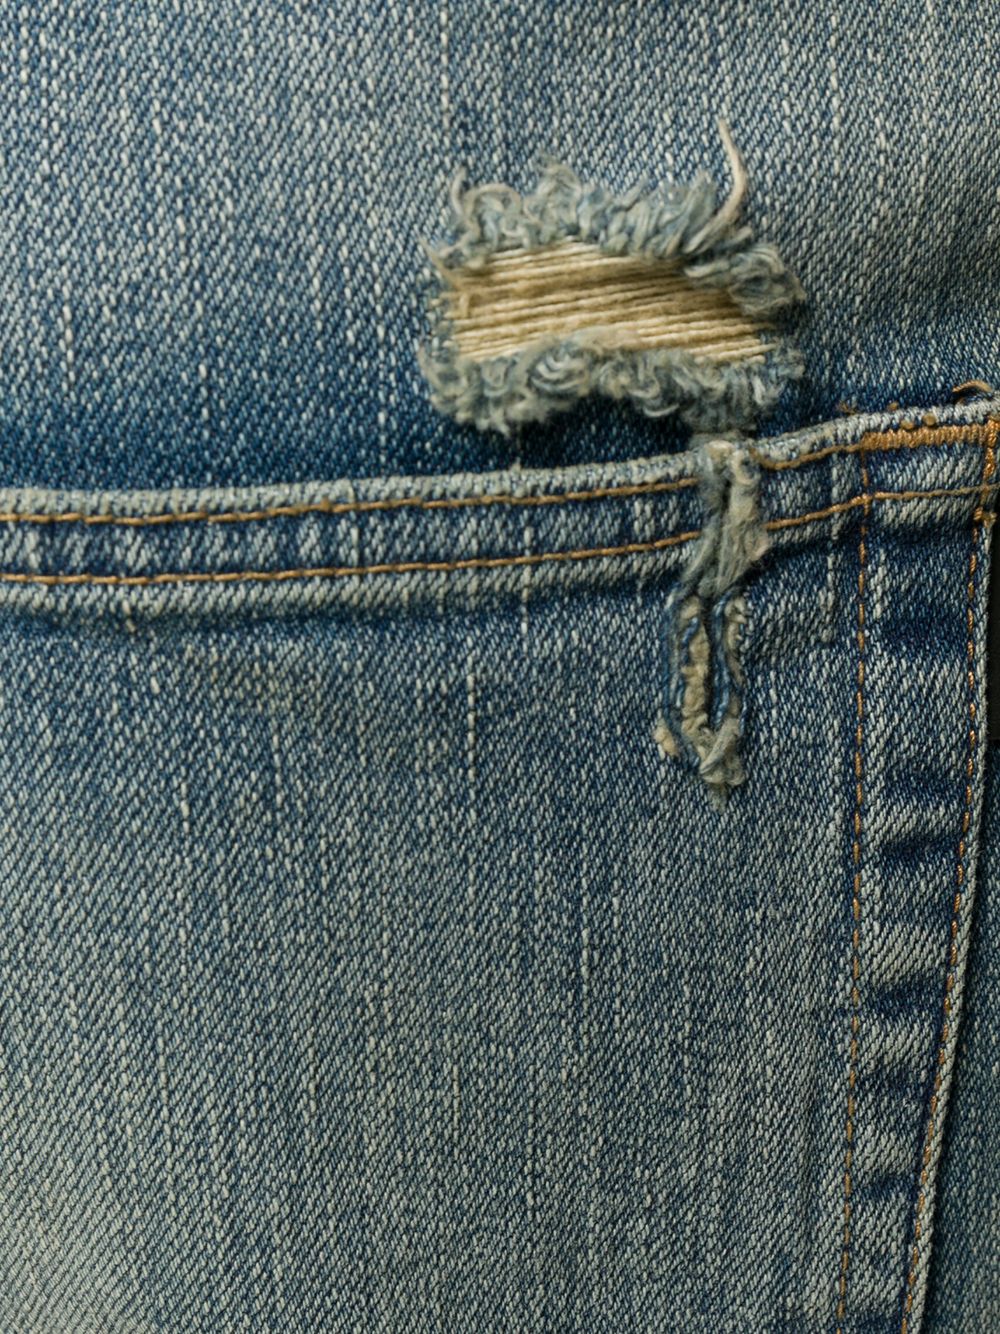 фото Saint laurent джинсы с эффектом потертости